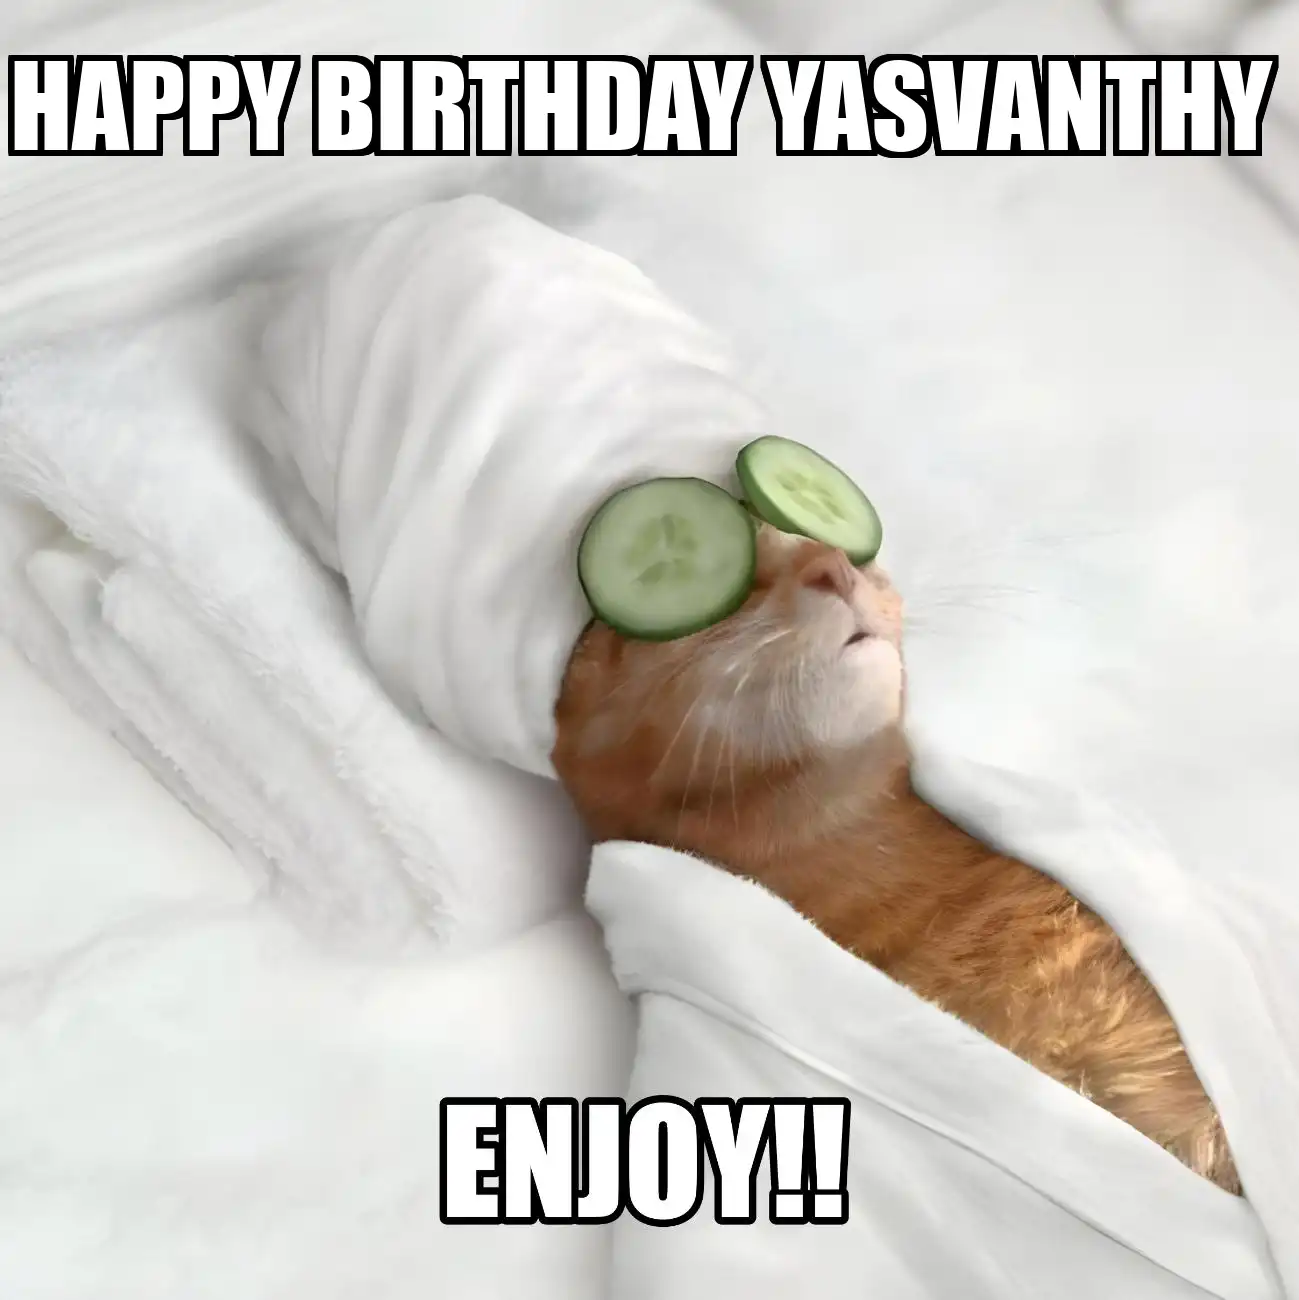 Happy Birthday Yasvanthy Enjoy Cat Meme